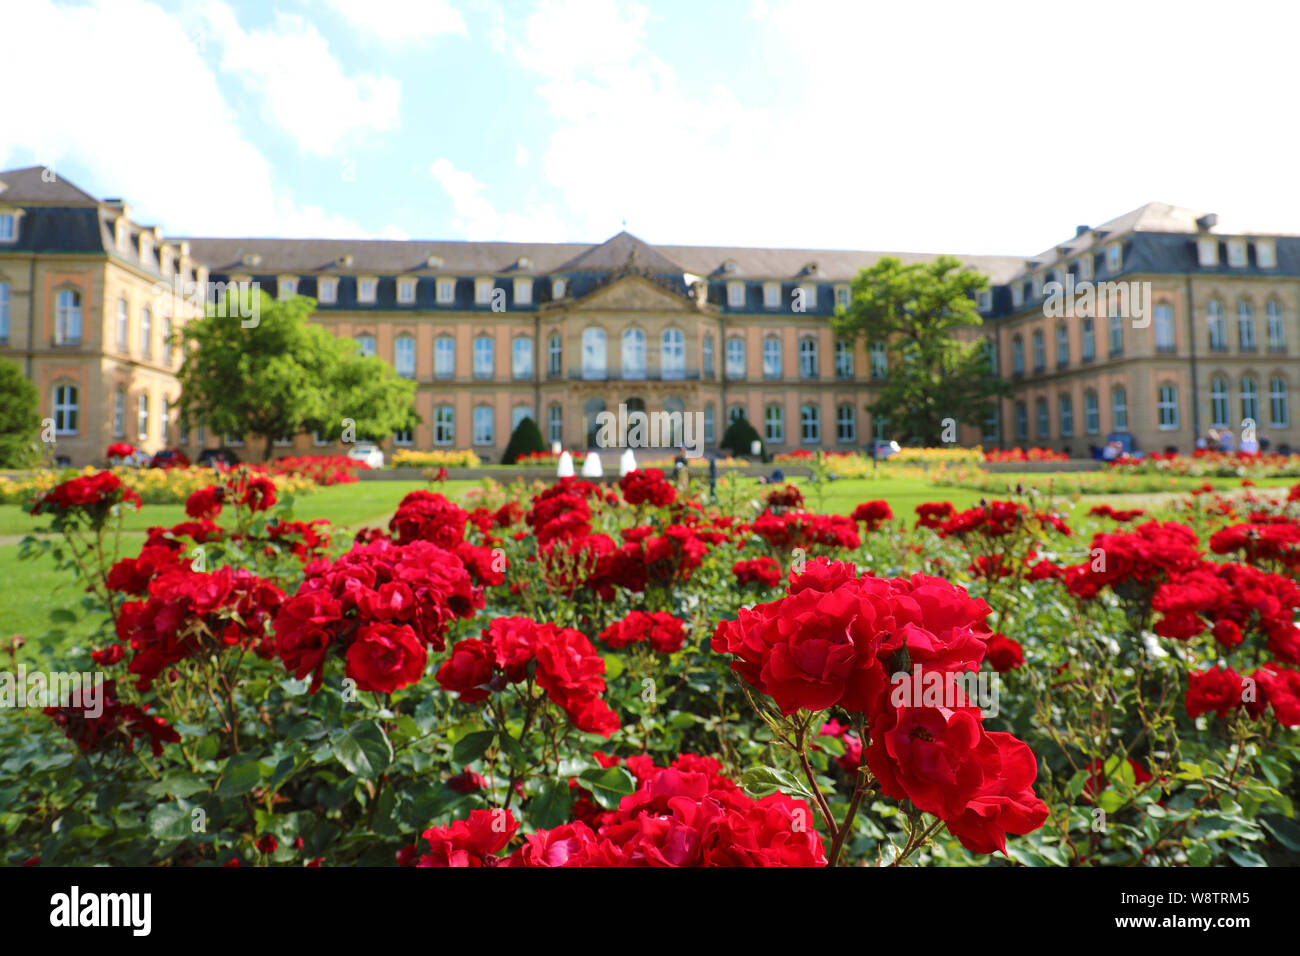 Neues Schloss (New Palace) and Oberer Schloßgarten garden of Stuttgart, Germany. Focus on the red roses garden. Stock Photo